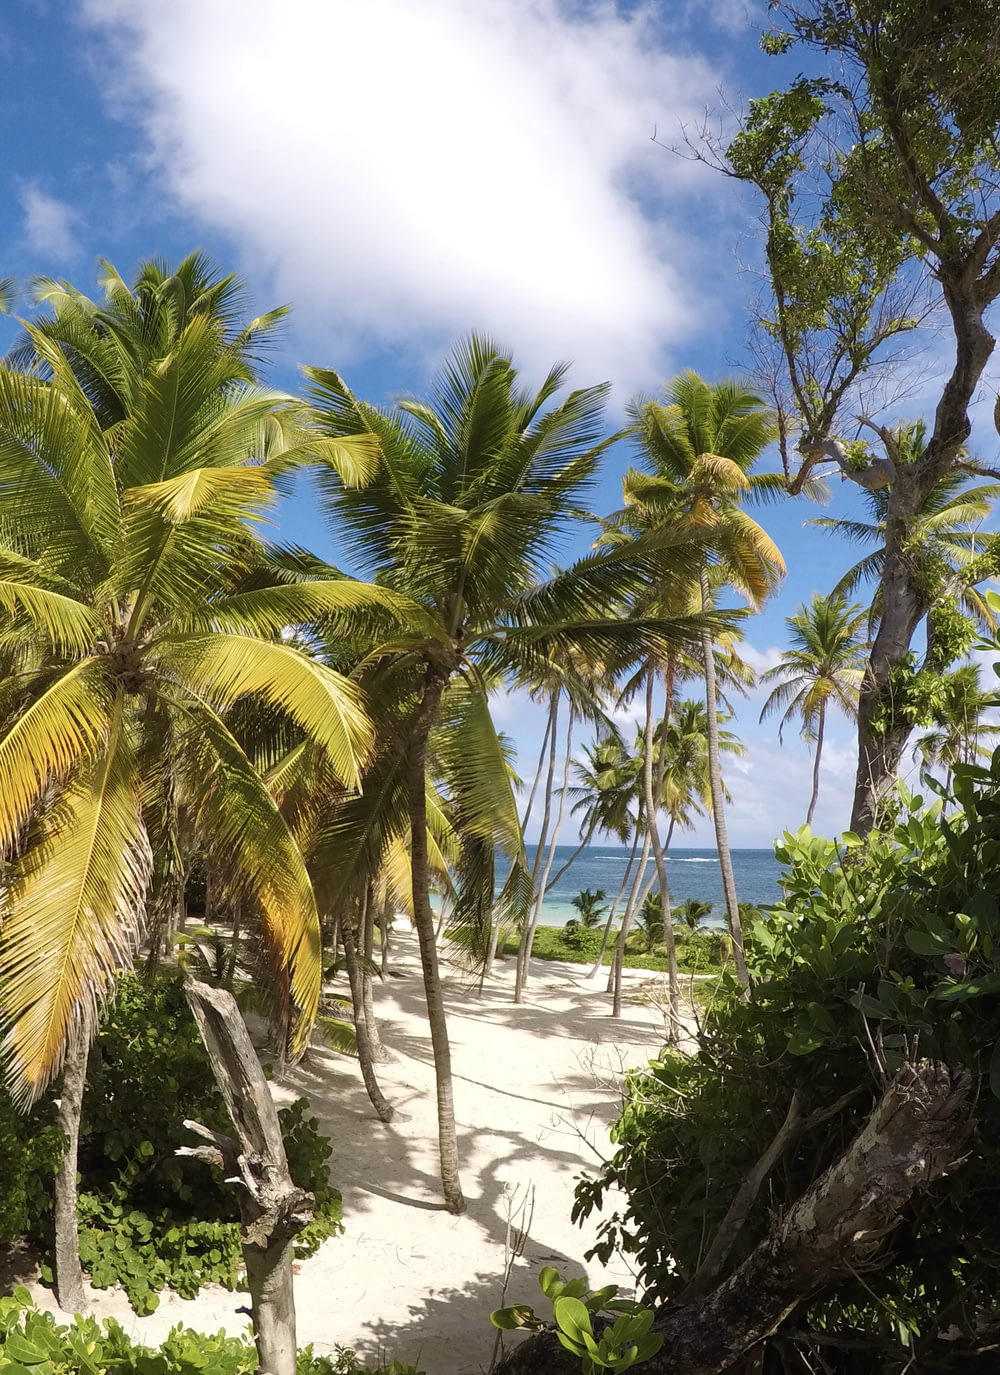 Palmiers verts sur la plage de sable blanc pendant la journée